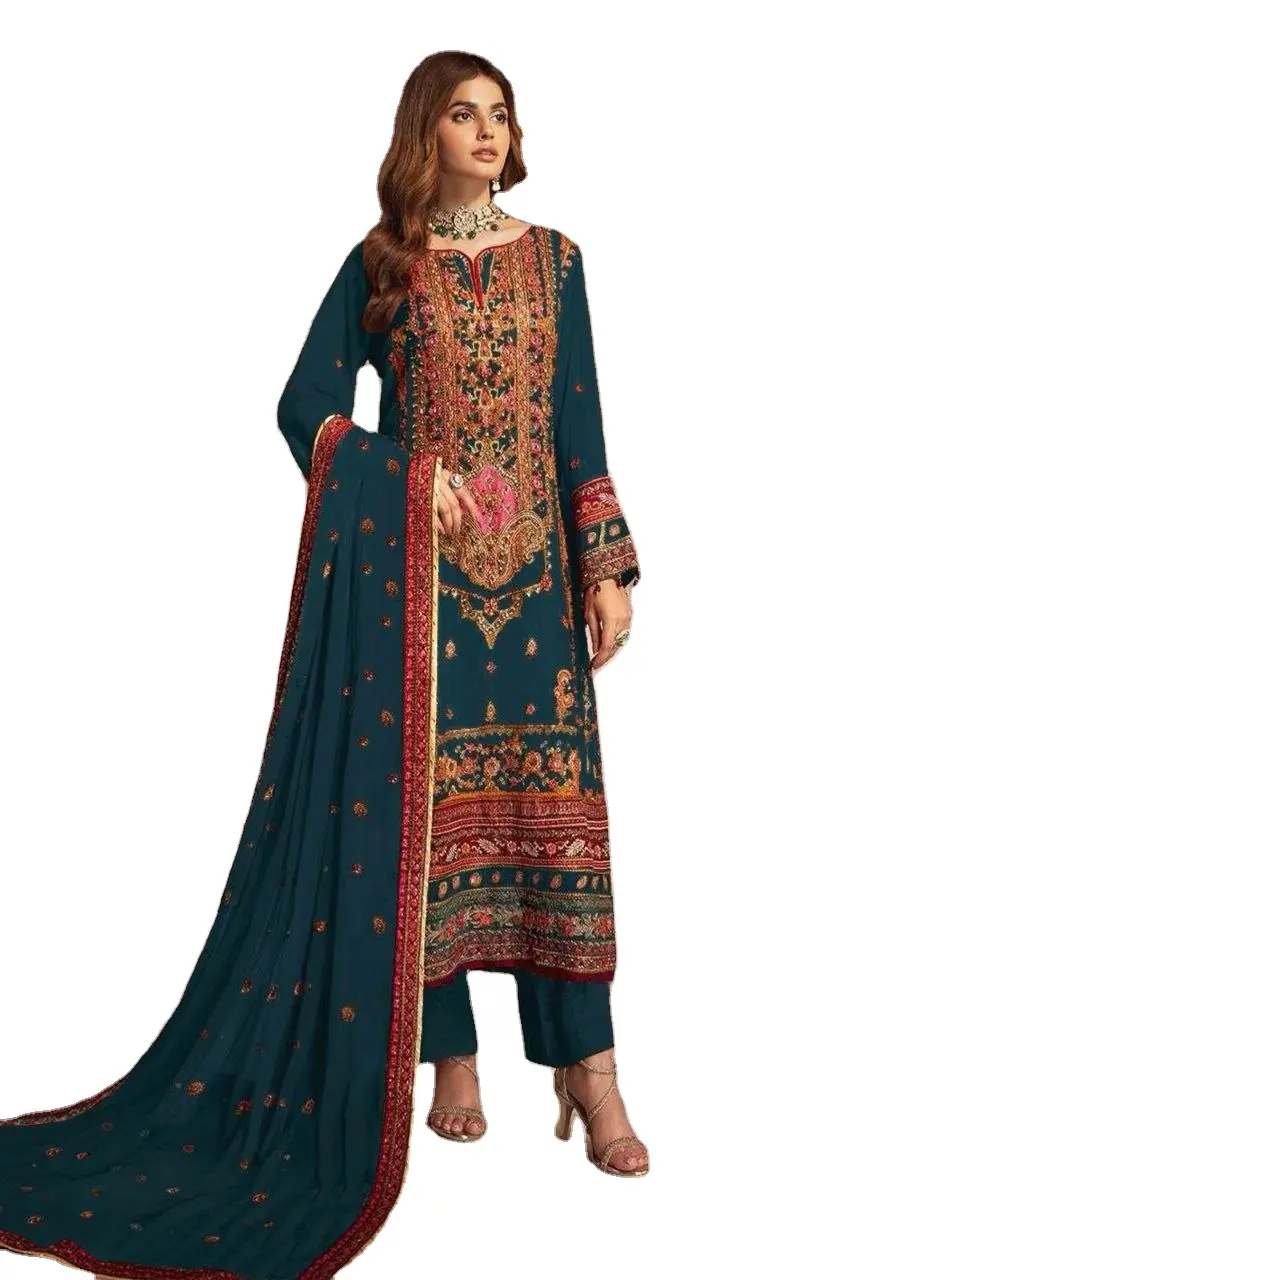 Aktuellste stilvolle indische Designer pakistanischer Stil Stickerei Sekunde Arbeit Party Kleidung Kleider Kleid Kurti